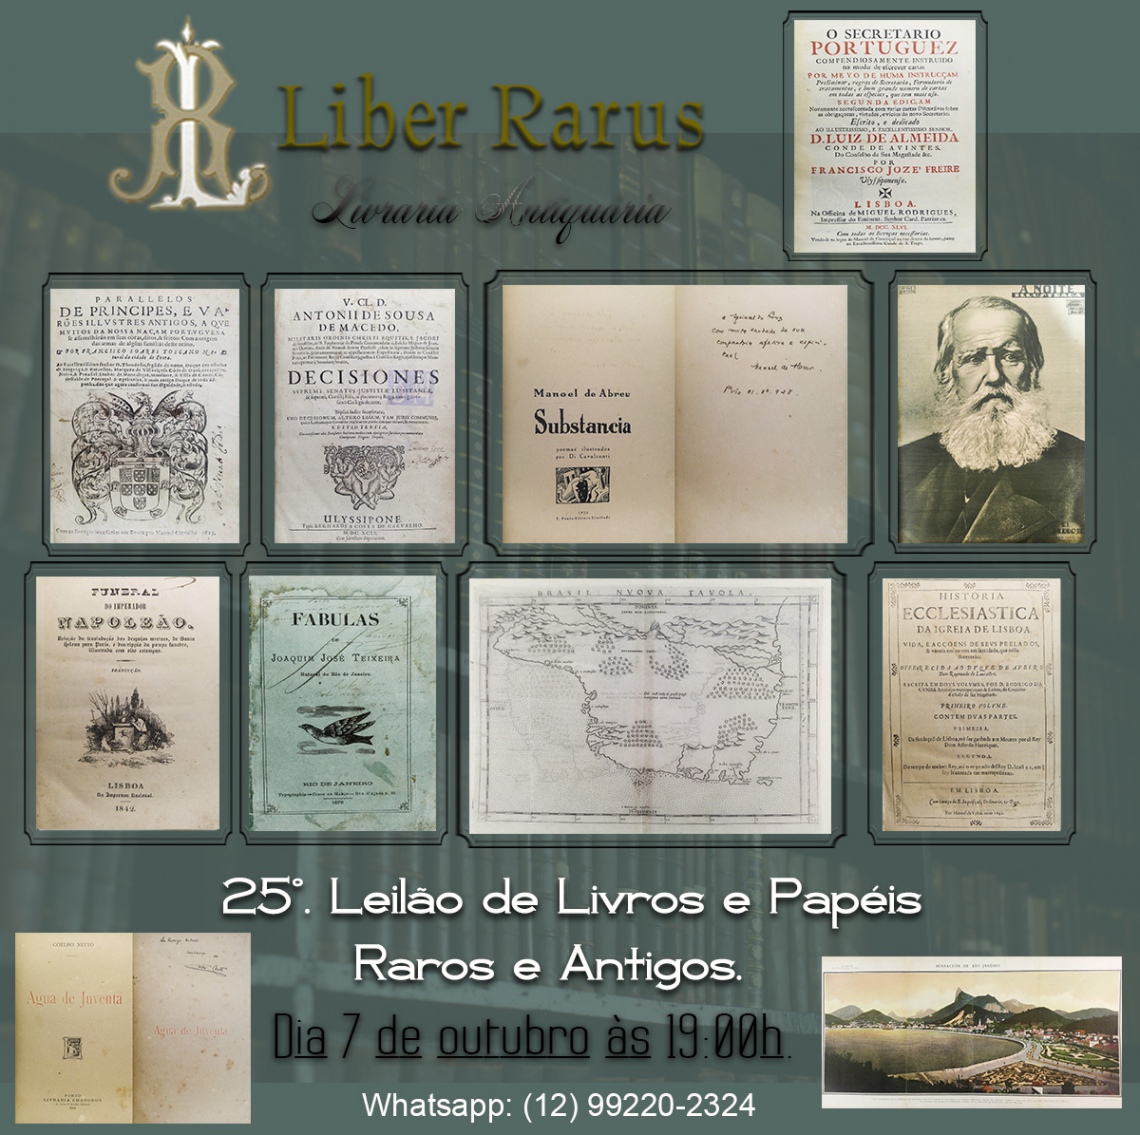 25º Leilão de Livros e Papéis Raros e Antigos - Liber Rarus - 07/10/2021 - 19h00